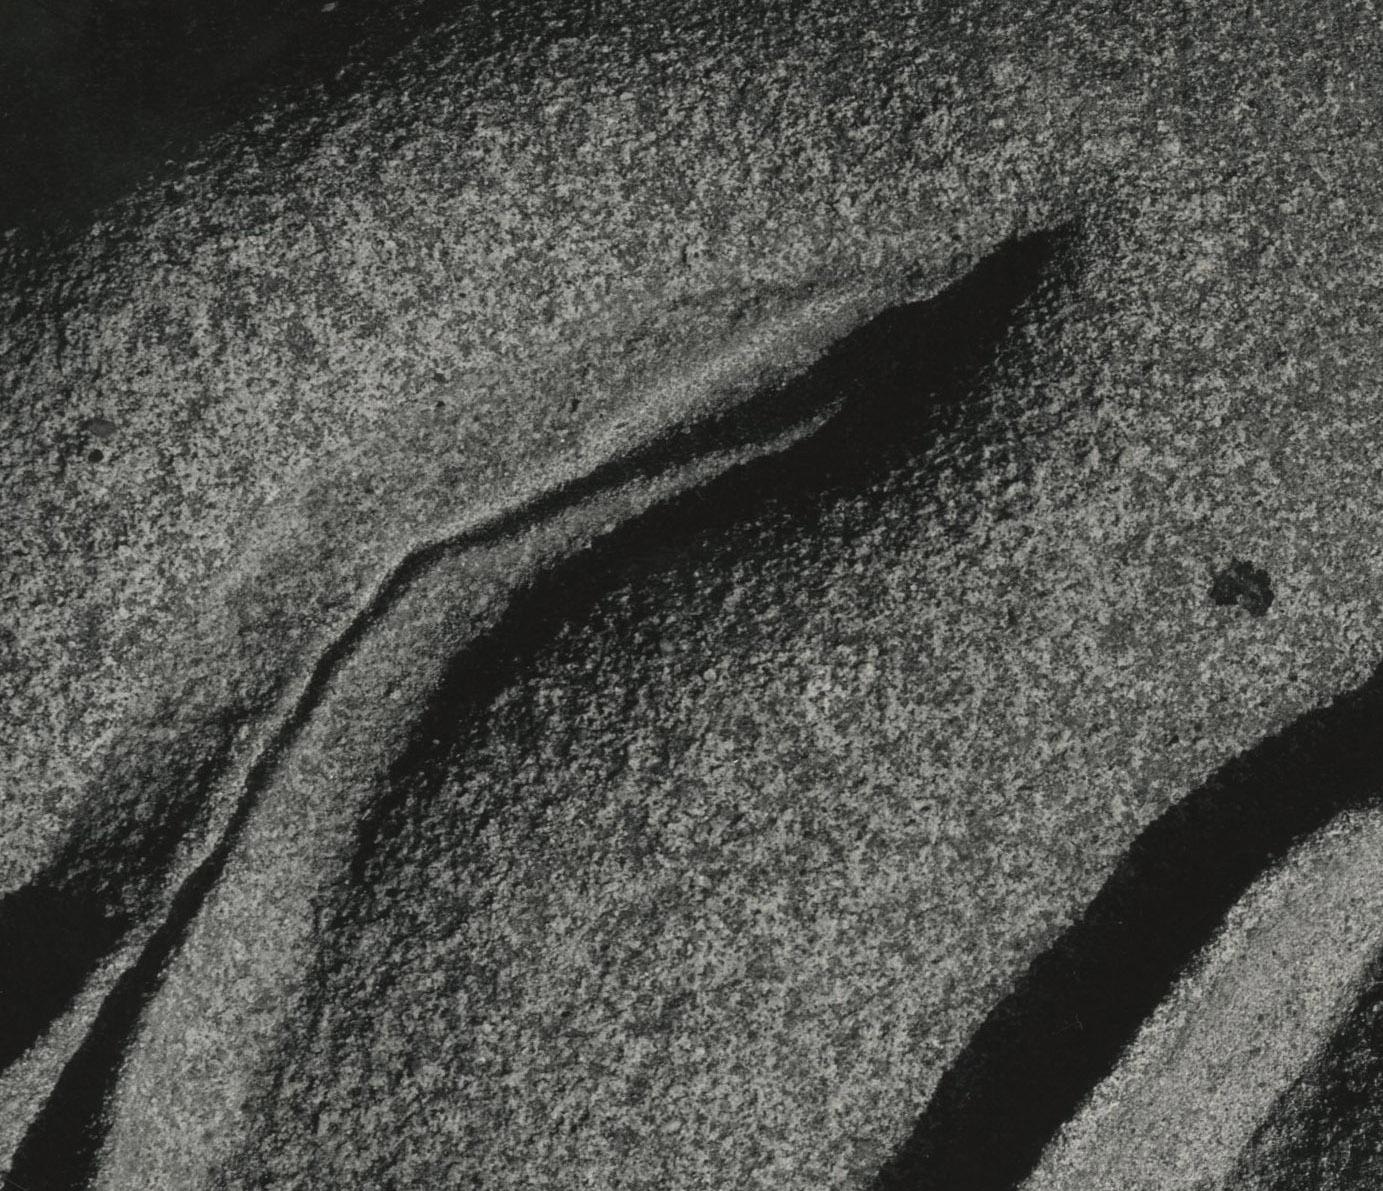 Erodierte Felsen, Point Lobos
Gelatinesilberdruck, 1929
Vorzeichenlos
Verso mit dem Nachlassstempel signiert (siehe Foto)
Ein lebenslanger Druck von Brett Weston, überwacht von seinem Vater Edward
Auflage: 5 oder 6 Drucke (siehe Text